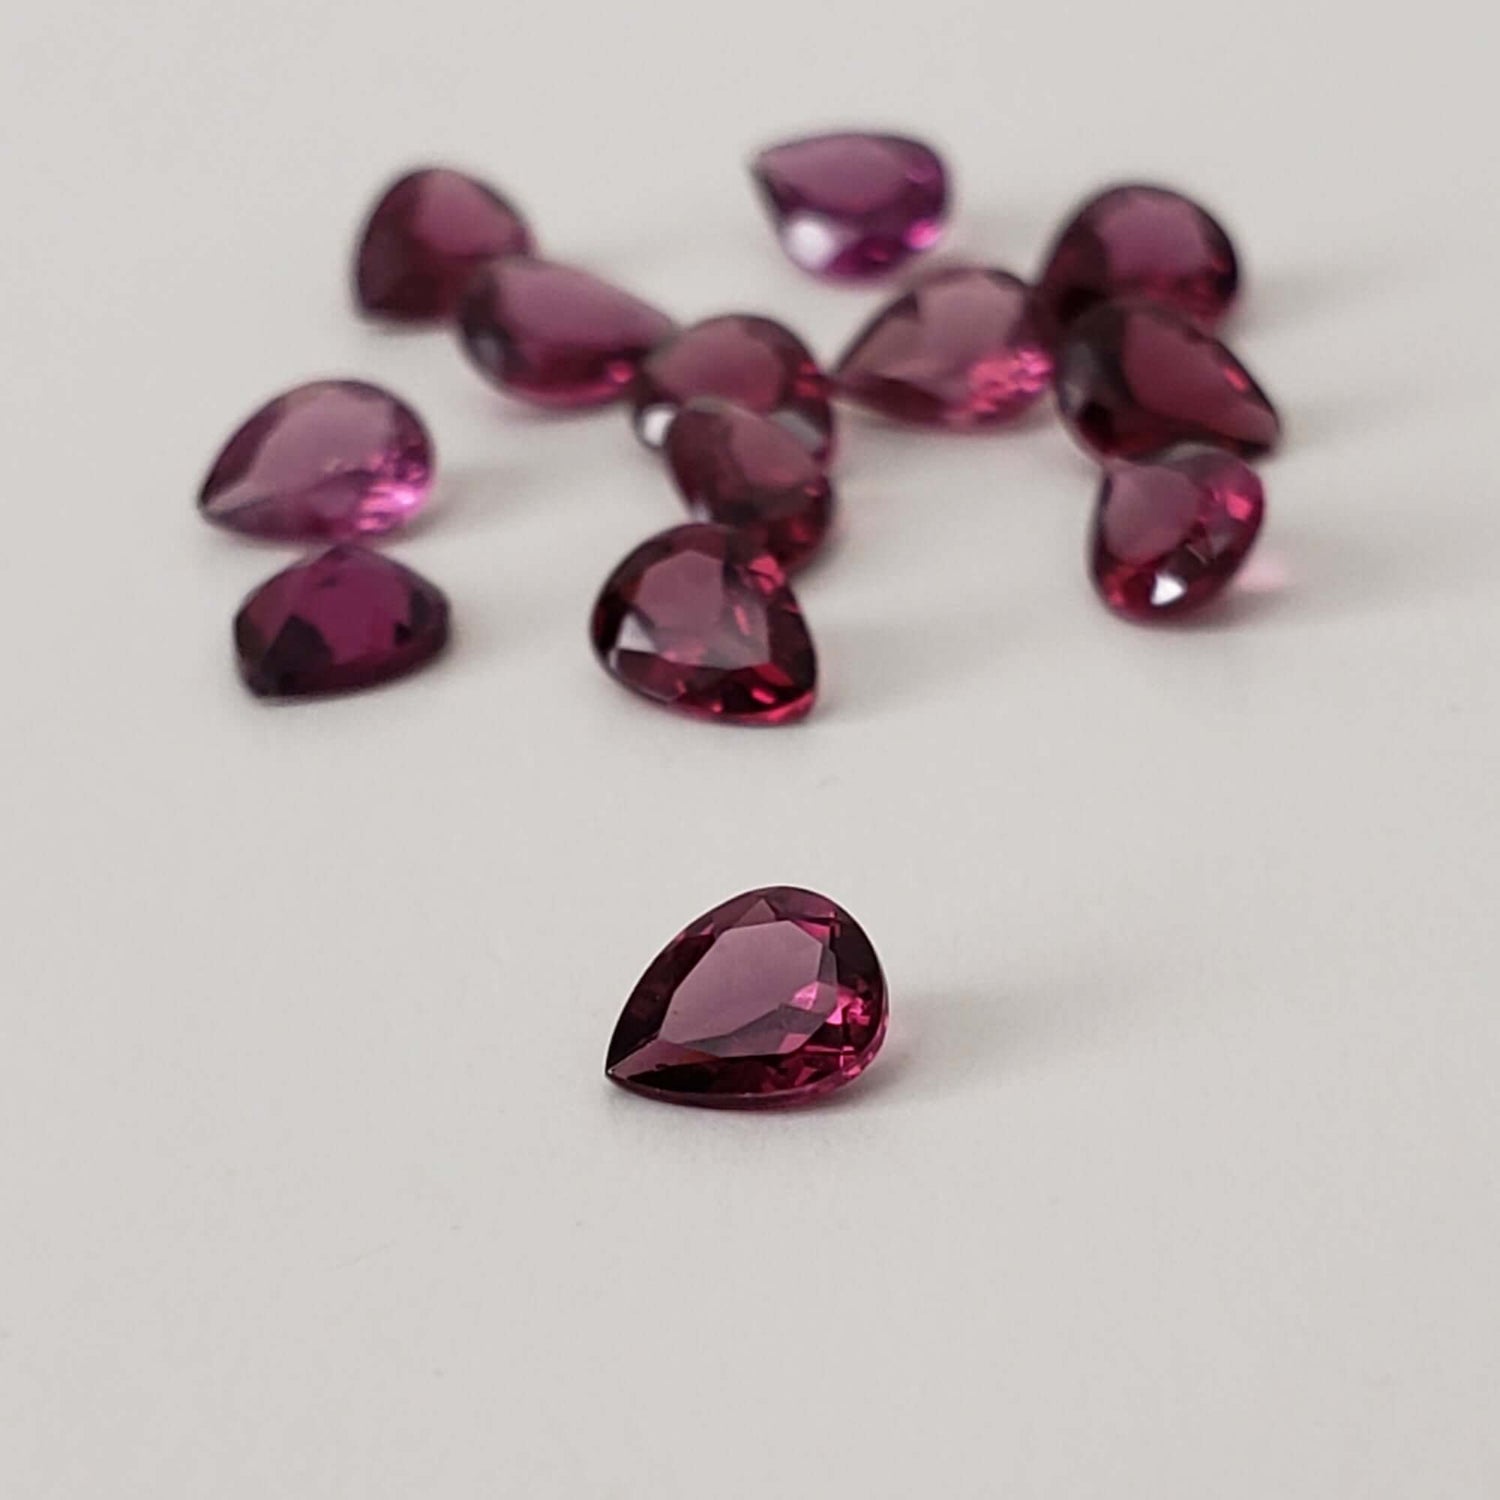 Rhodolite Garnet | Untreated Garnet | Pear Shape Cut | Reddish Purple | 5x4mm